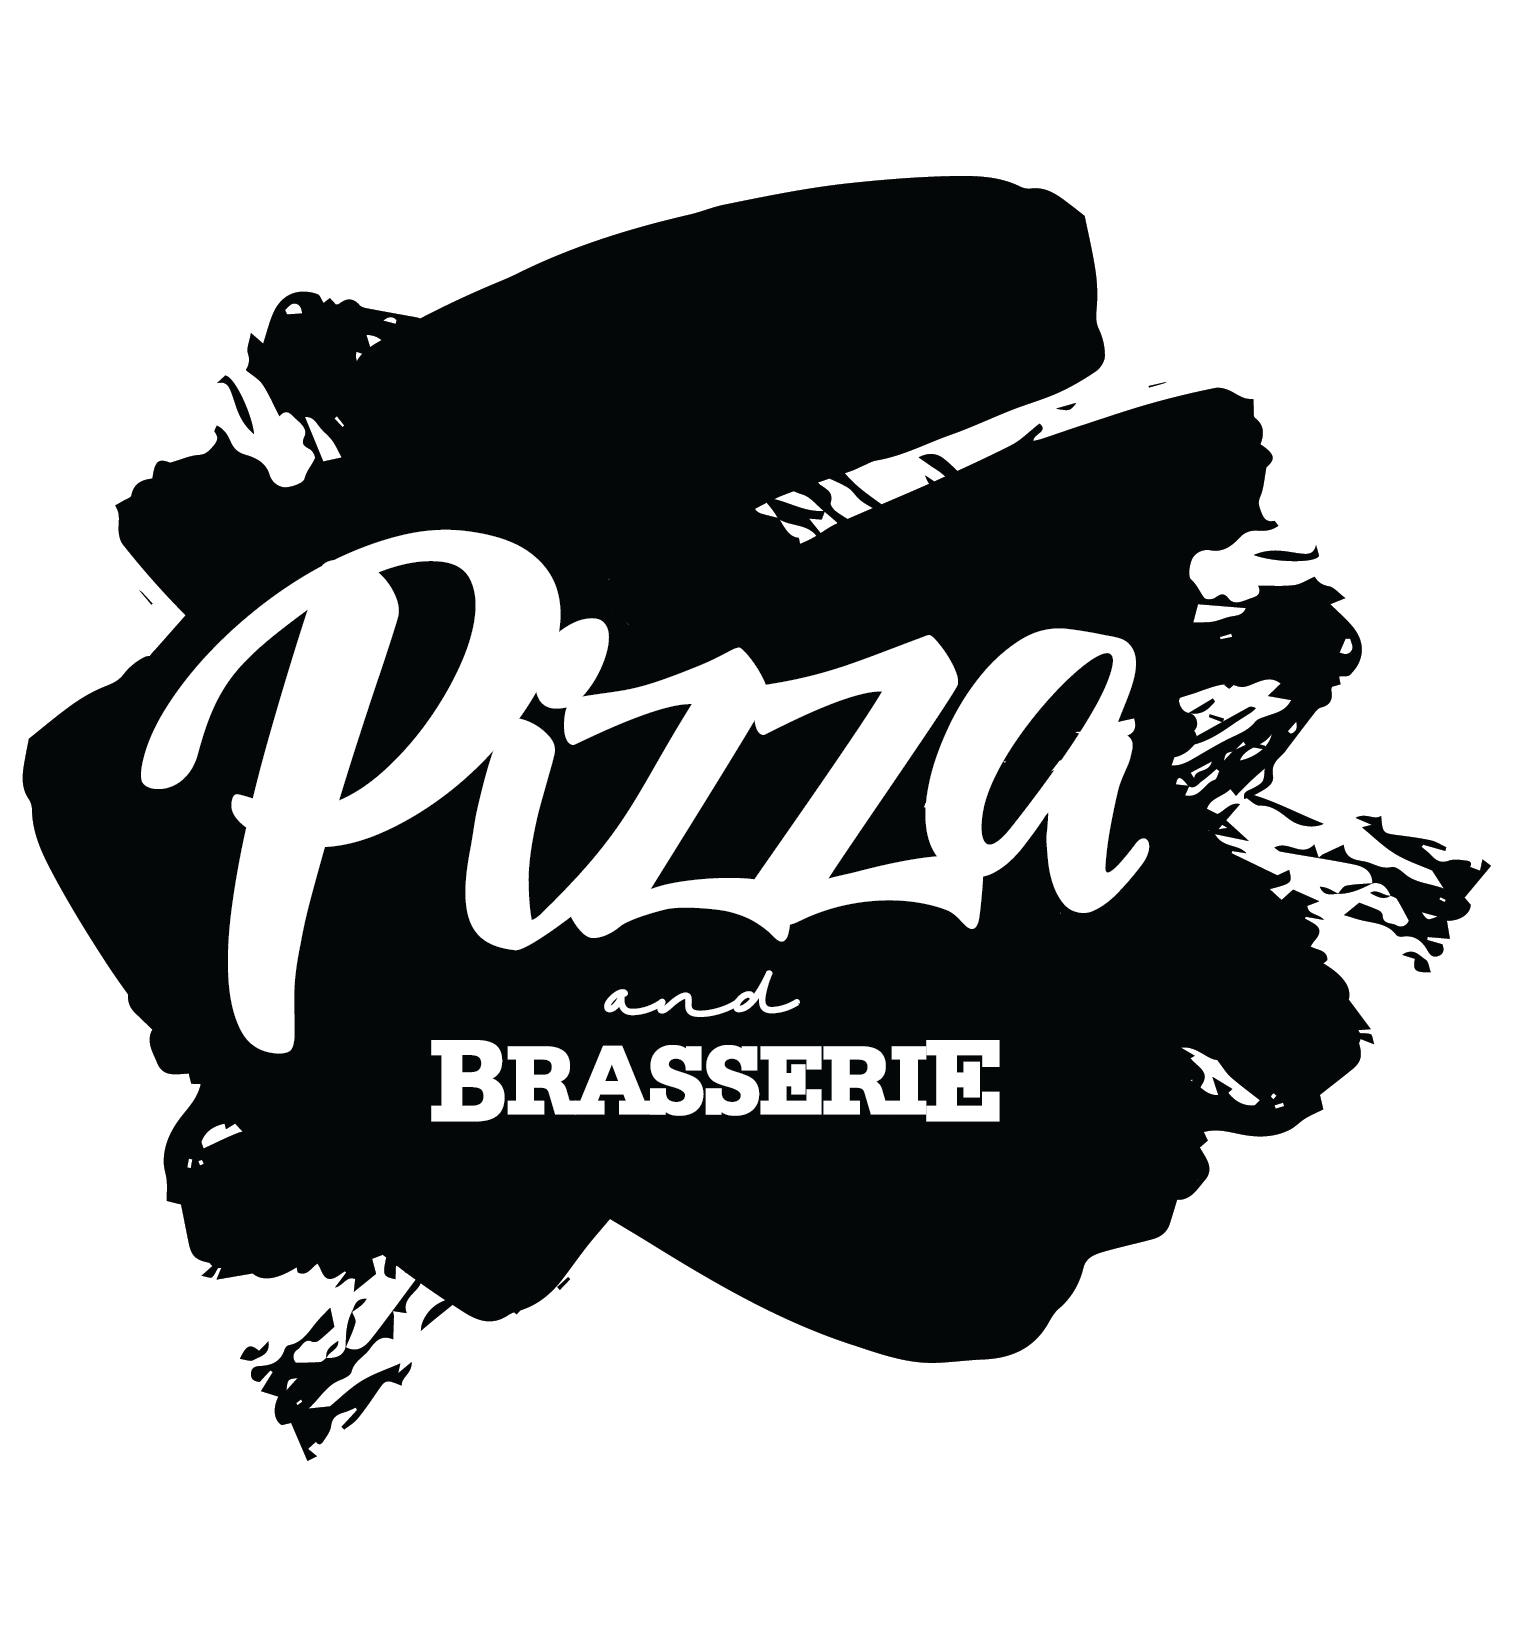 pizzaandbrasserie-01